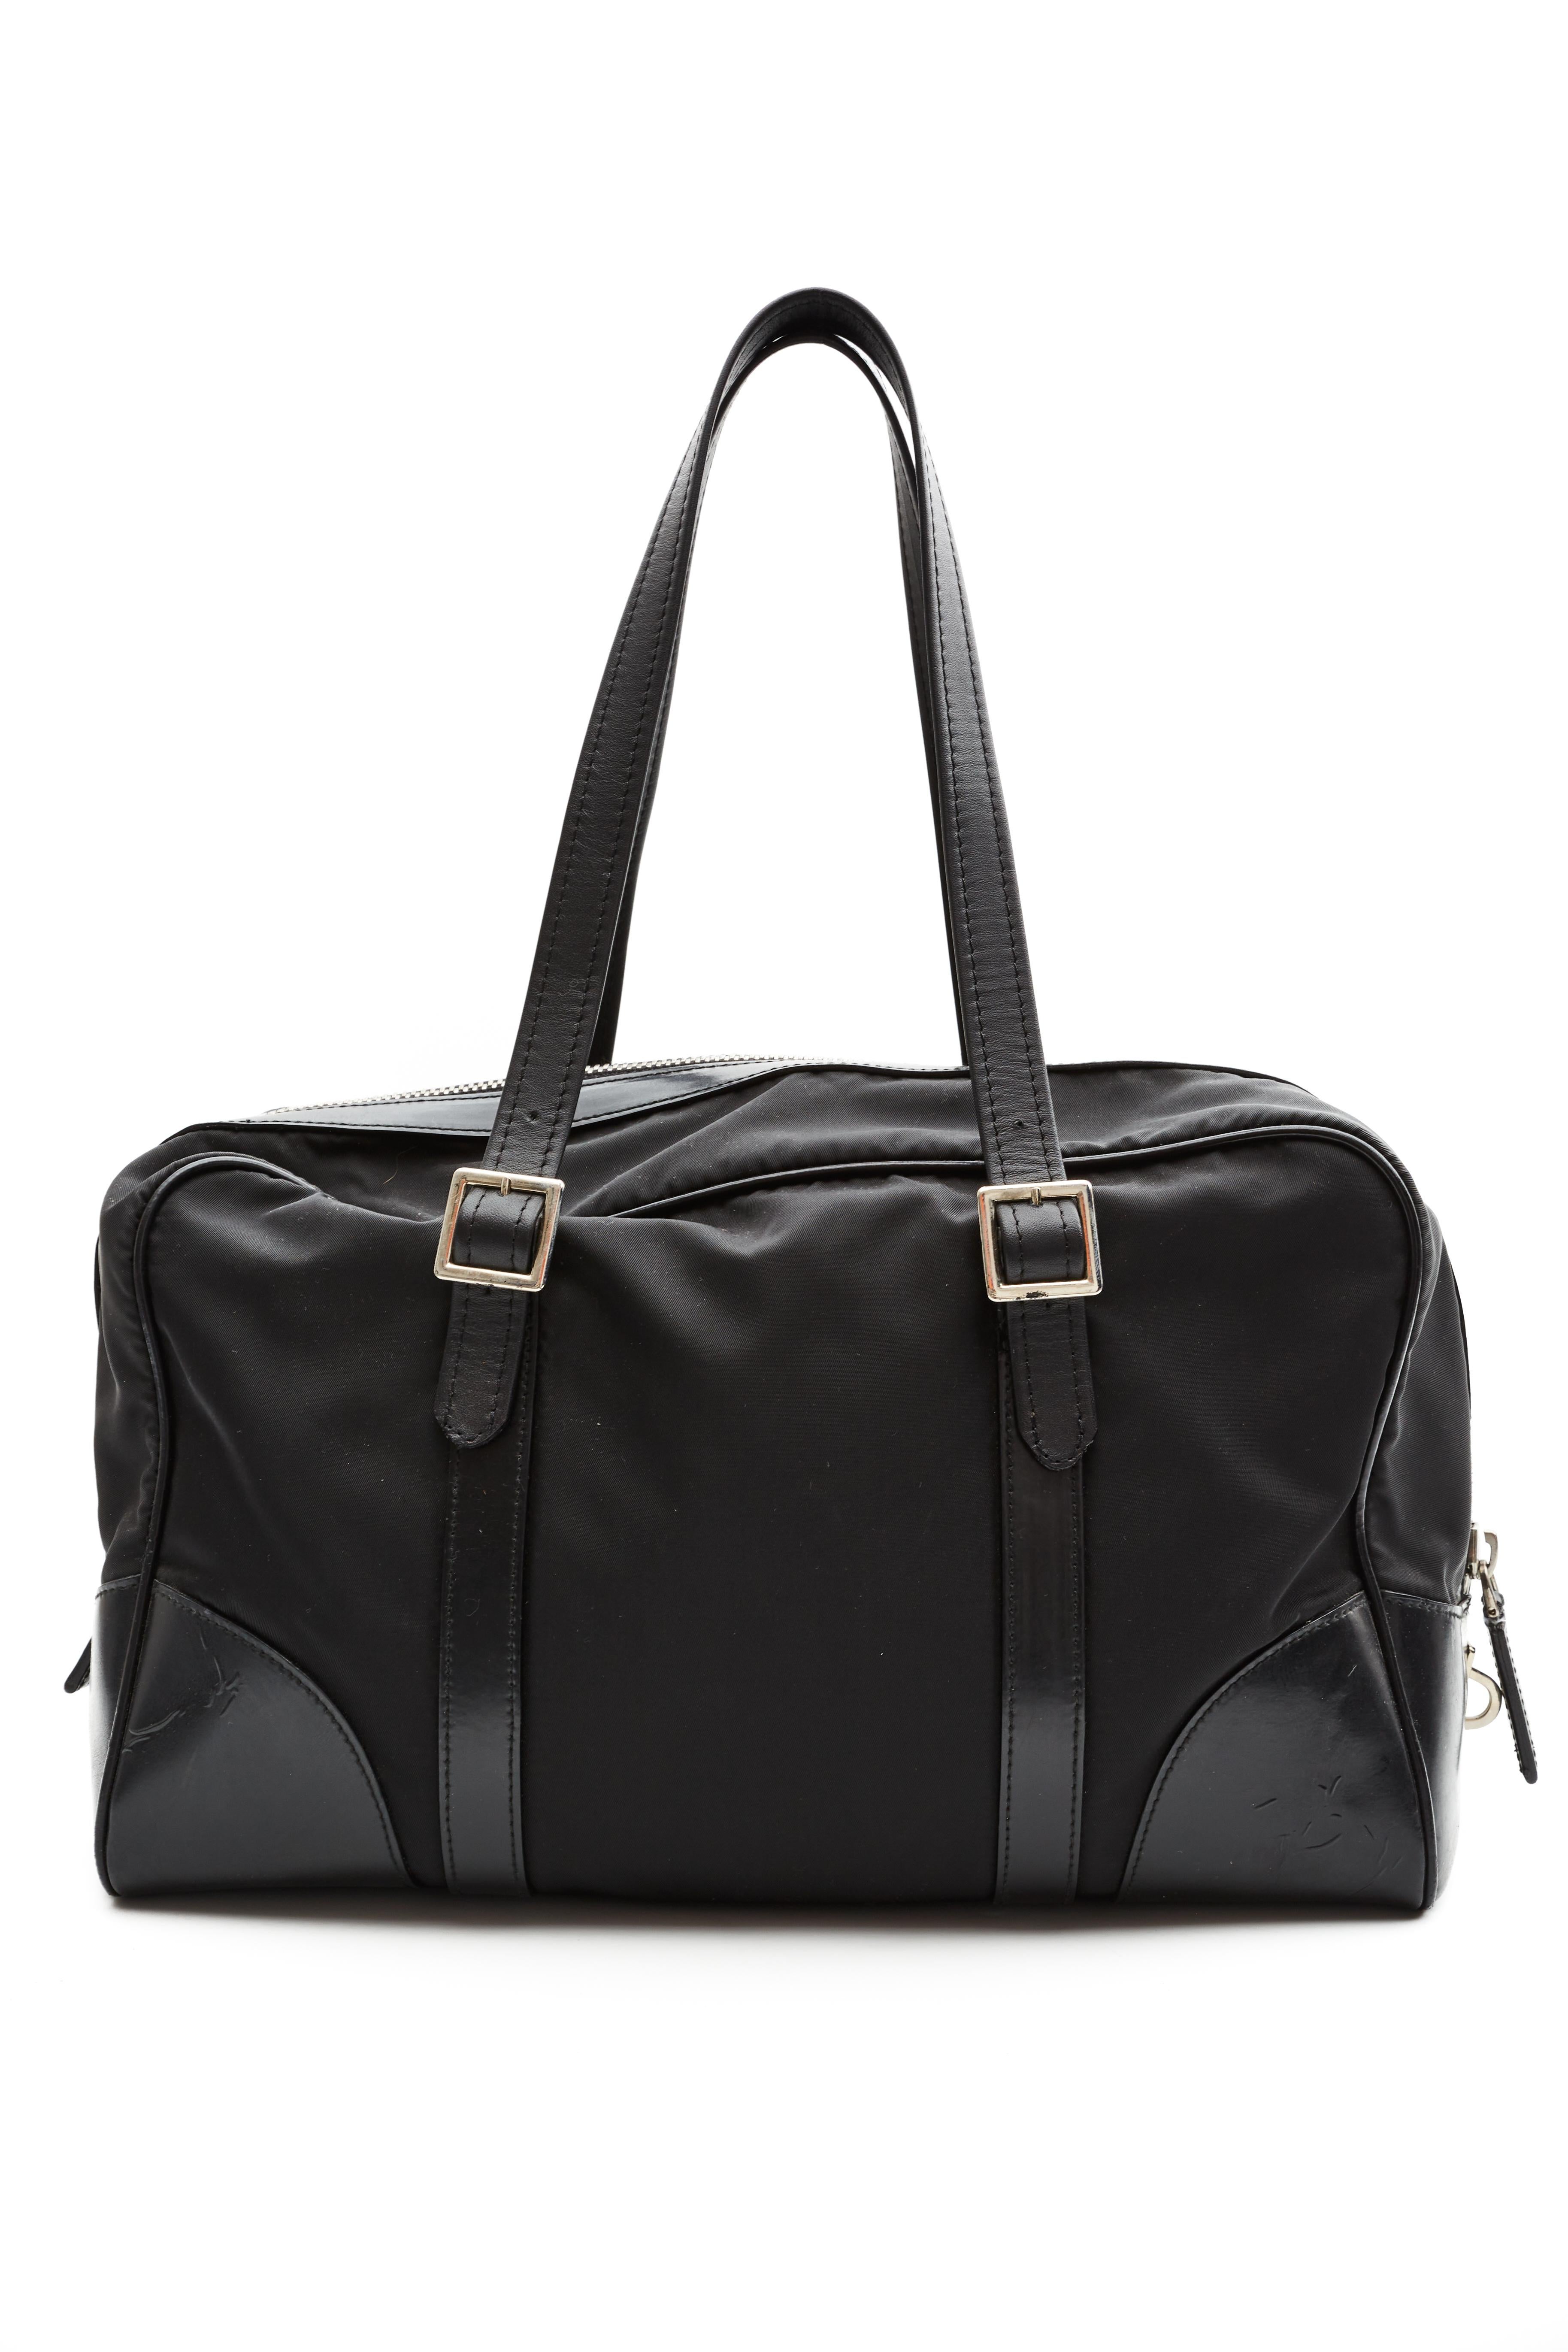 Ce sac Prada est réalisé avec des finitions en nylon et en cuir noir. Le sac est doté d'anses plates en cuir, d'une fermeture zippée sur le dessus et d'une doublure intérieure ornée du logo et du motif jacquard emblématiques de Prada.

COULEUR :